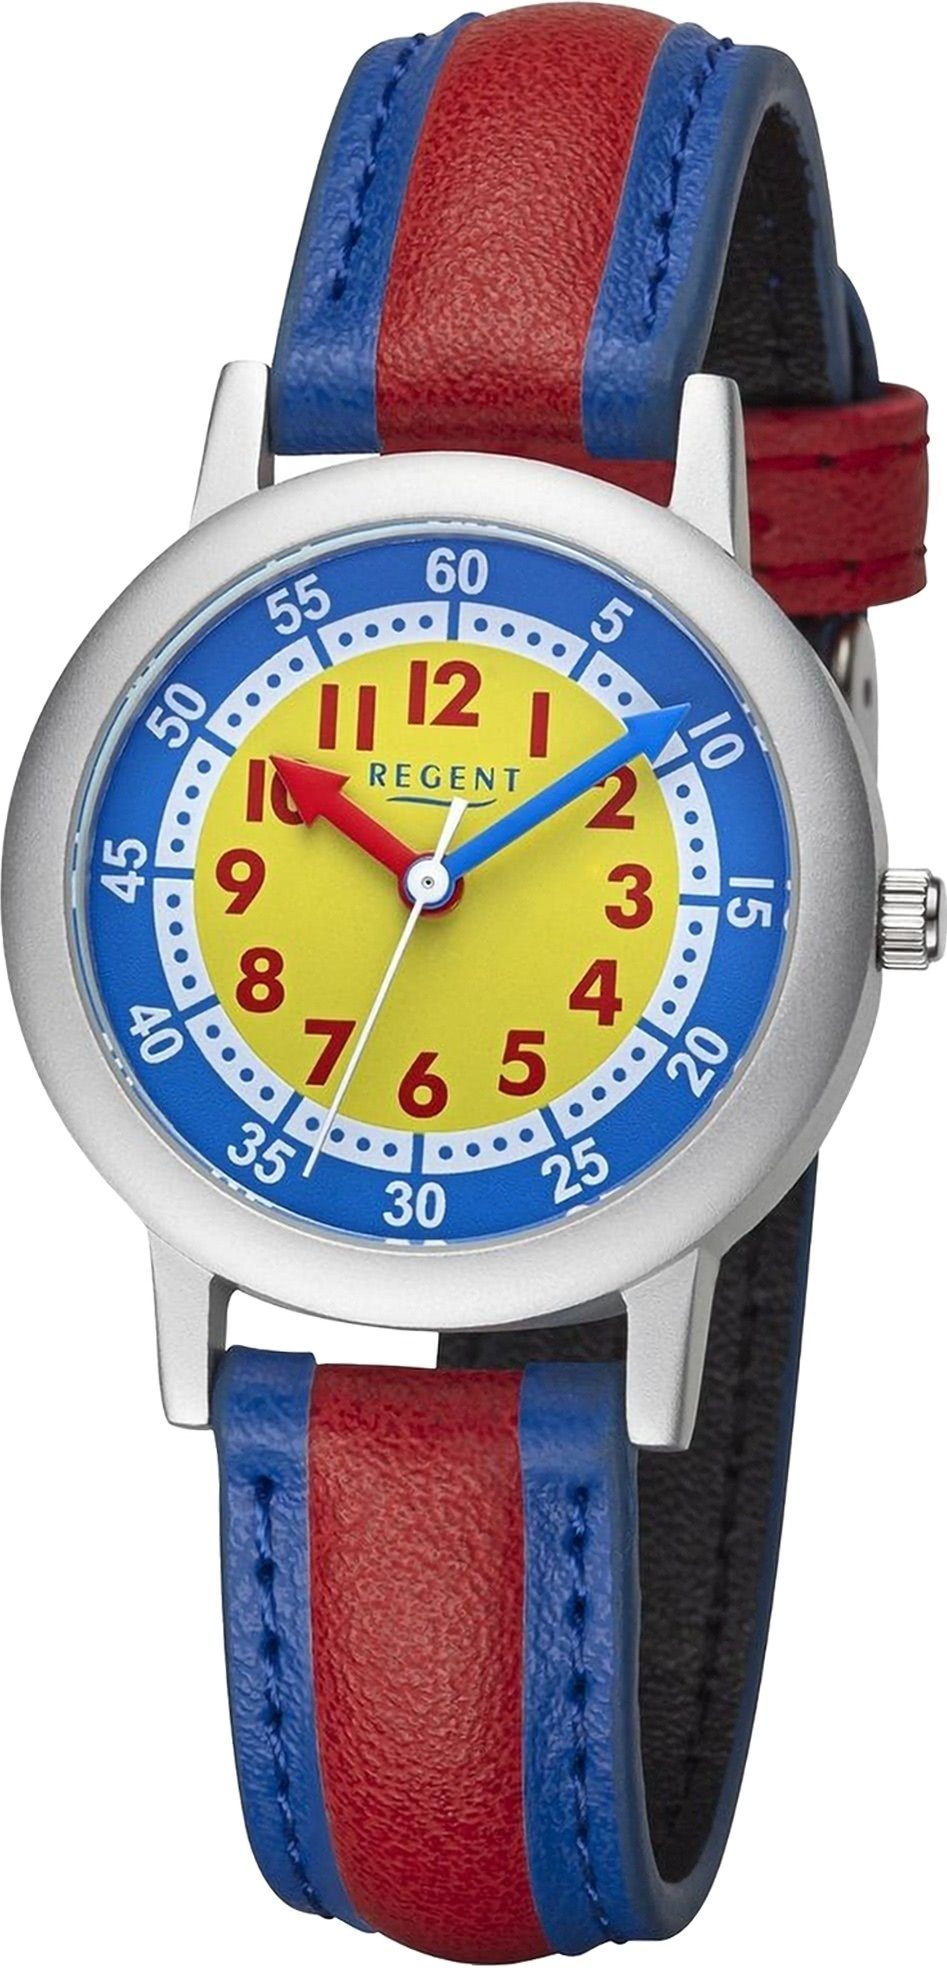 Quarzuhr rundes Kinderuhr Gehäuse, Regent (ca. Analog, PURarmband Regent 29,5mm) groß blau, Armbanduhr rot, Kinderuhruhr